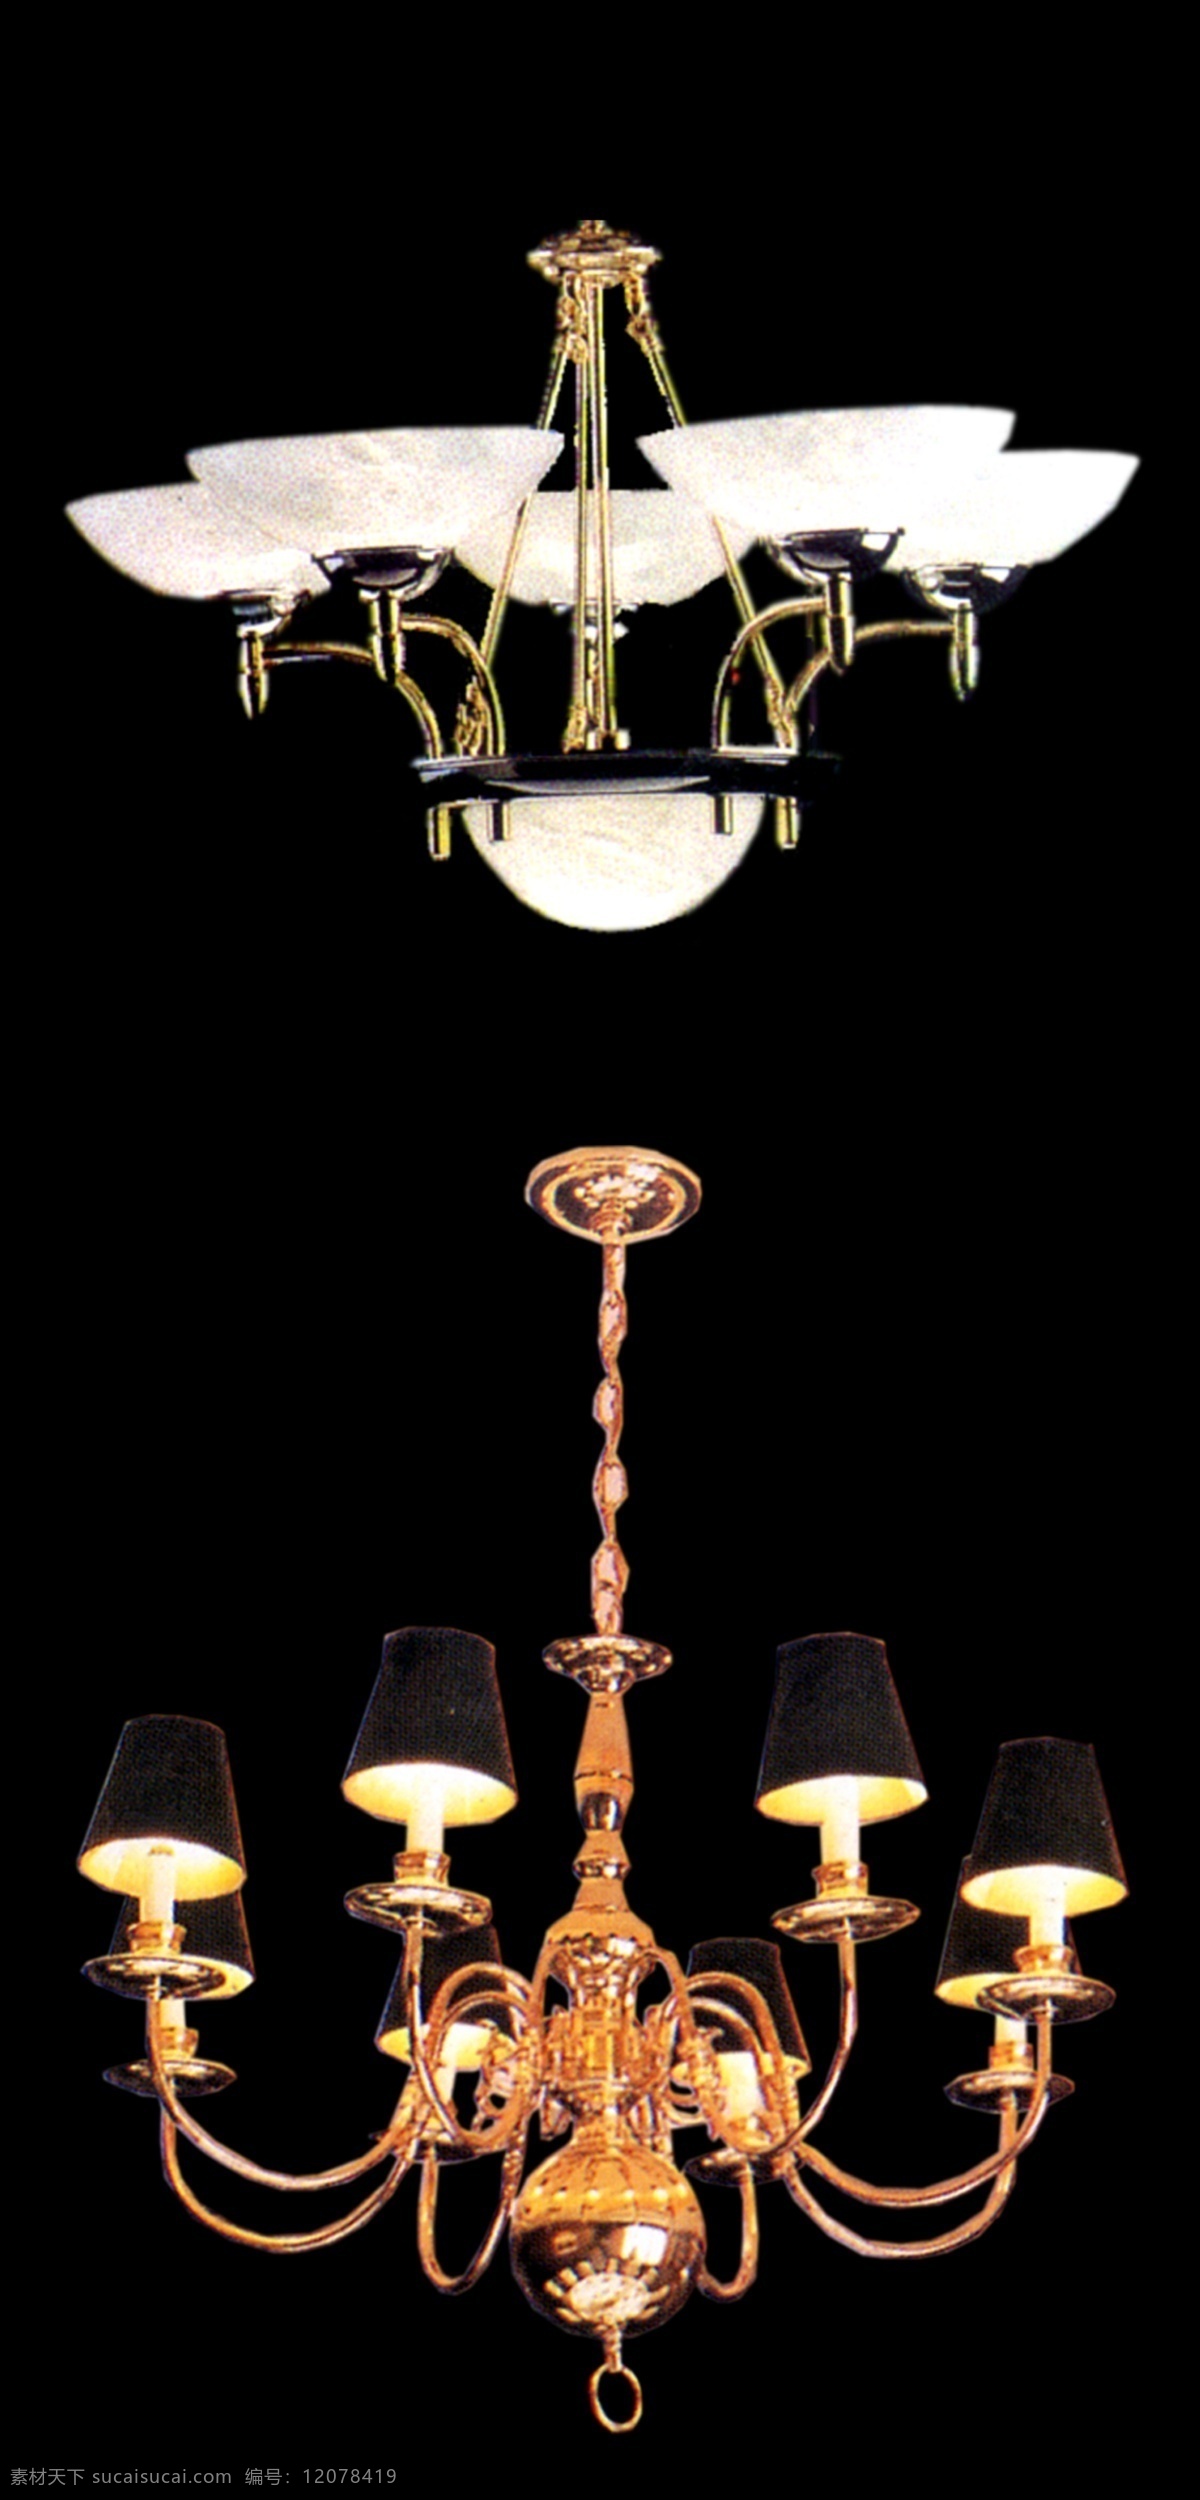 吊灯 灯具素材 电灯 花灯 吸顶灯 设计元素 灯具元素 壁灯 室内广告设计